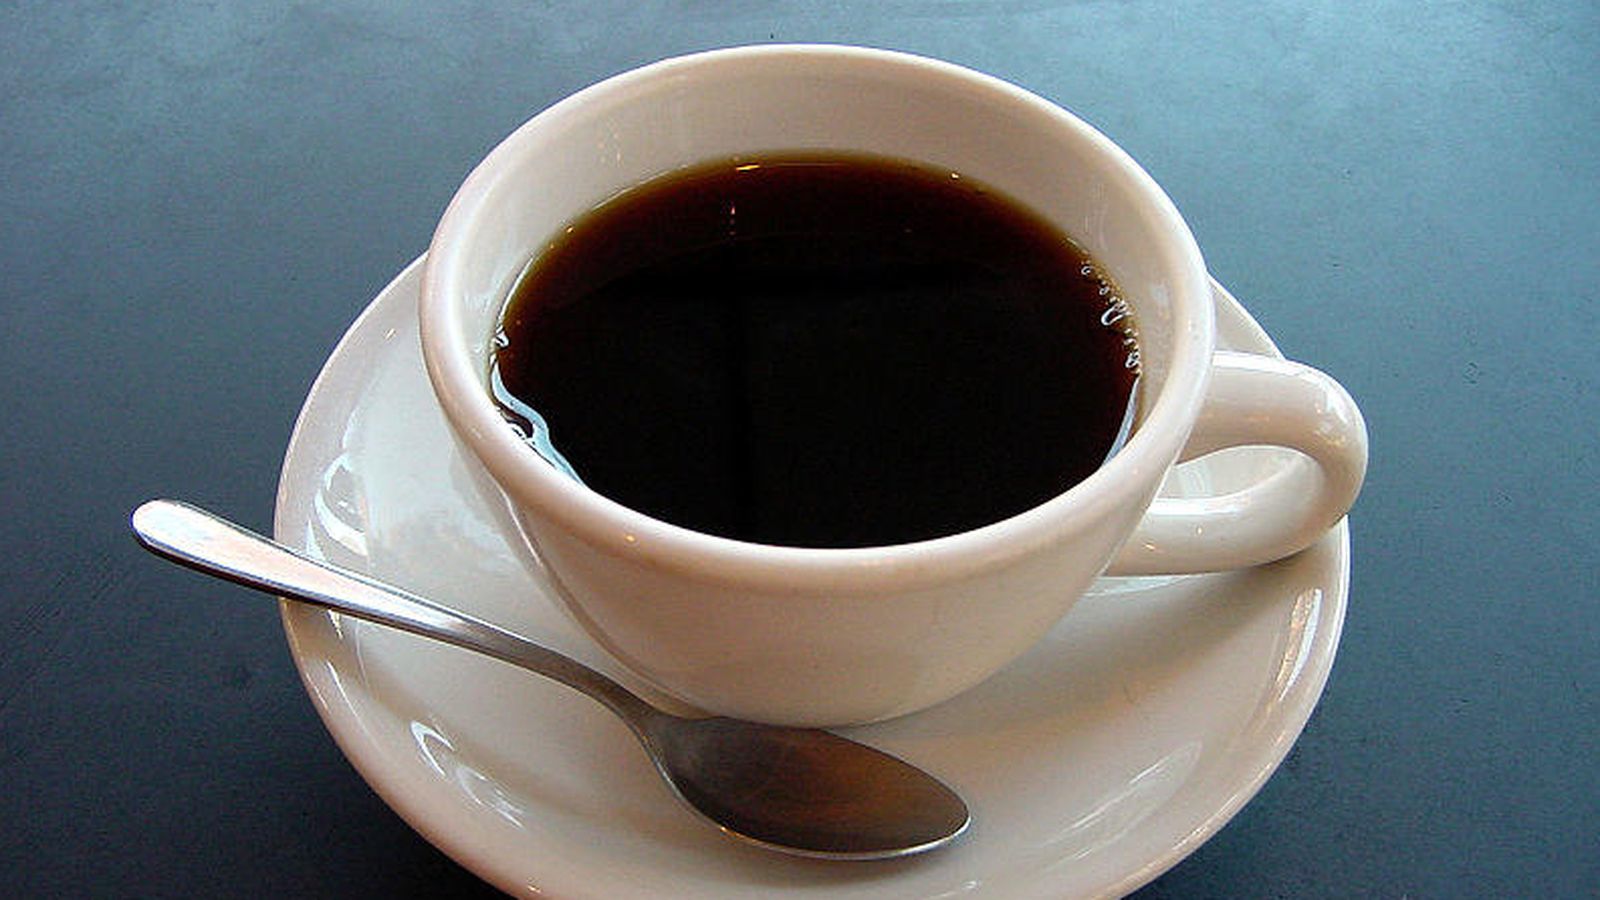 Foto: Por si puedes viajar alrededor del mundo, toma nota de qué tipos de cafés te encontrarás. (iStock)